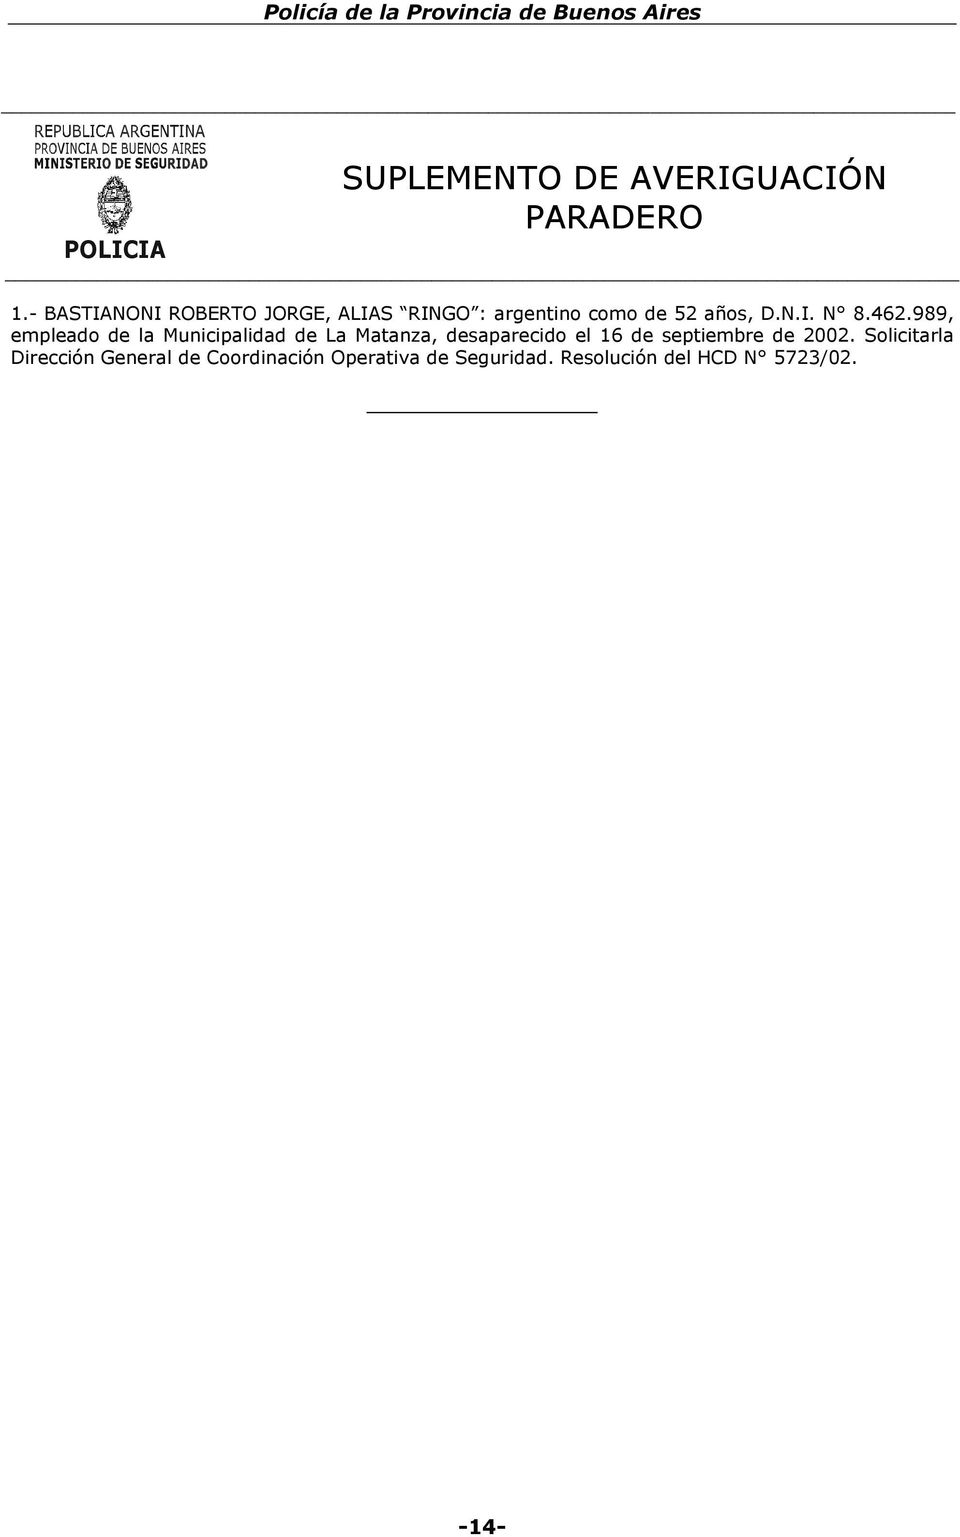 989, empleado de la Municipalidad de La Matanza, desaparecido el 16 de septiembre de 2002.